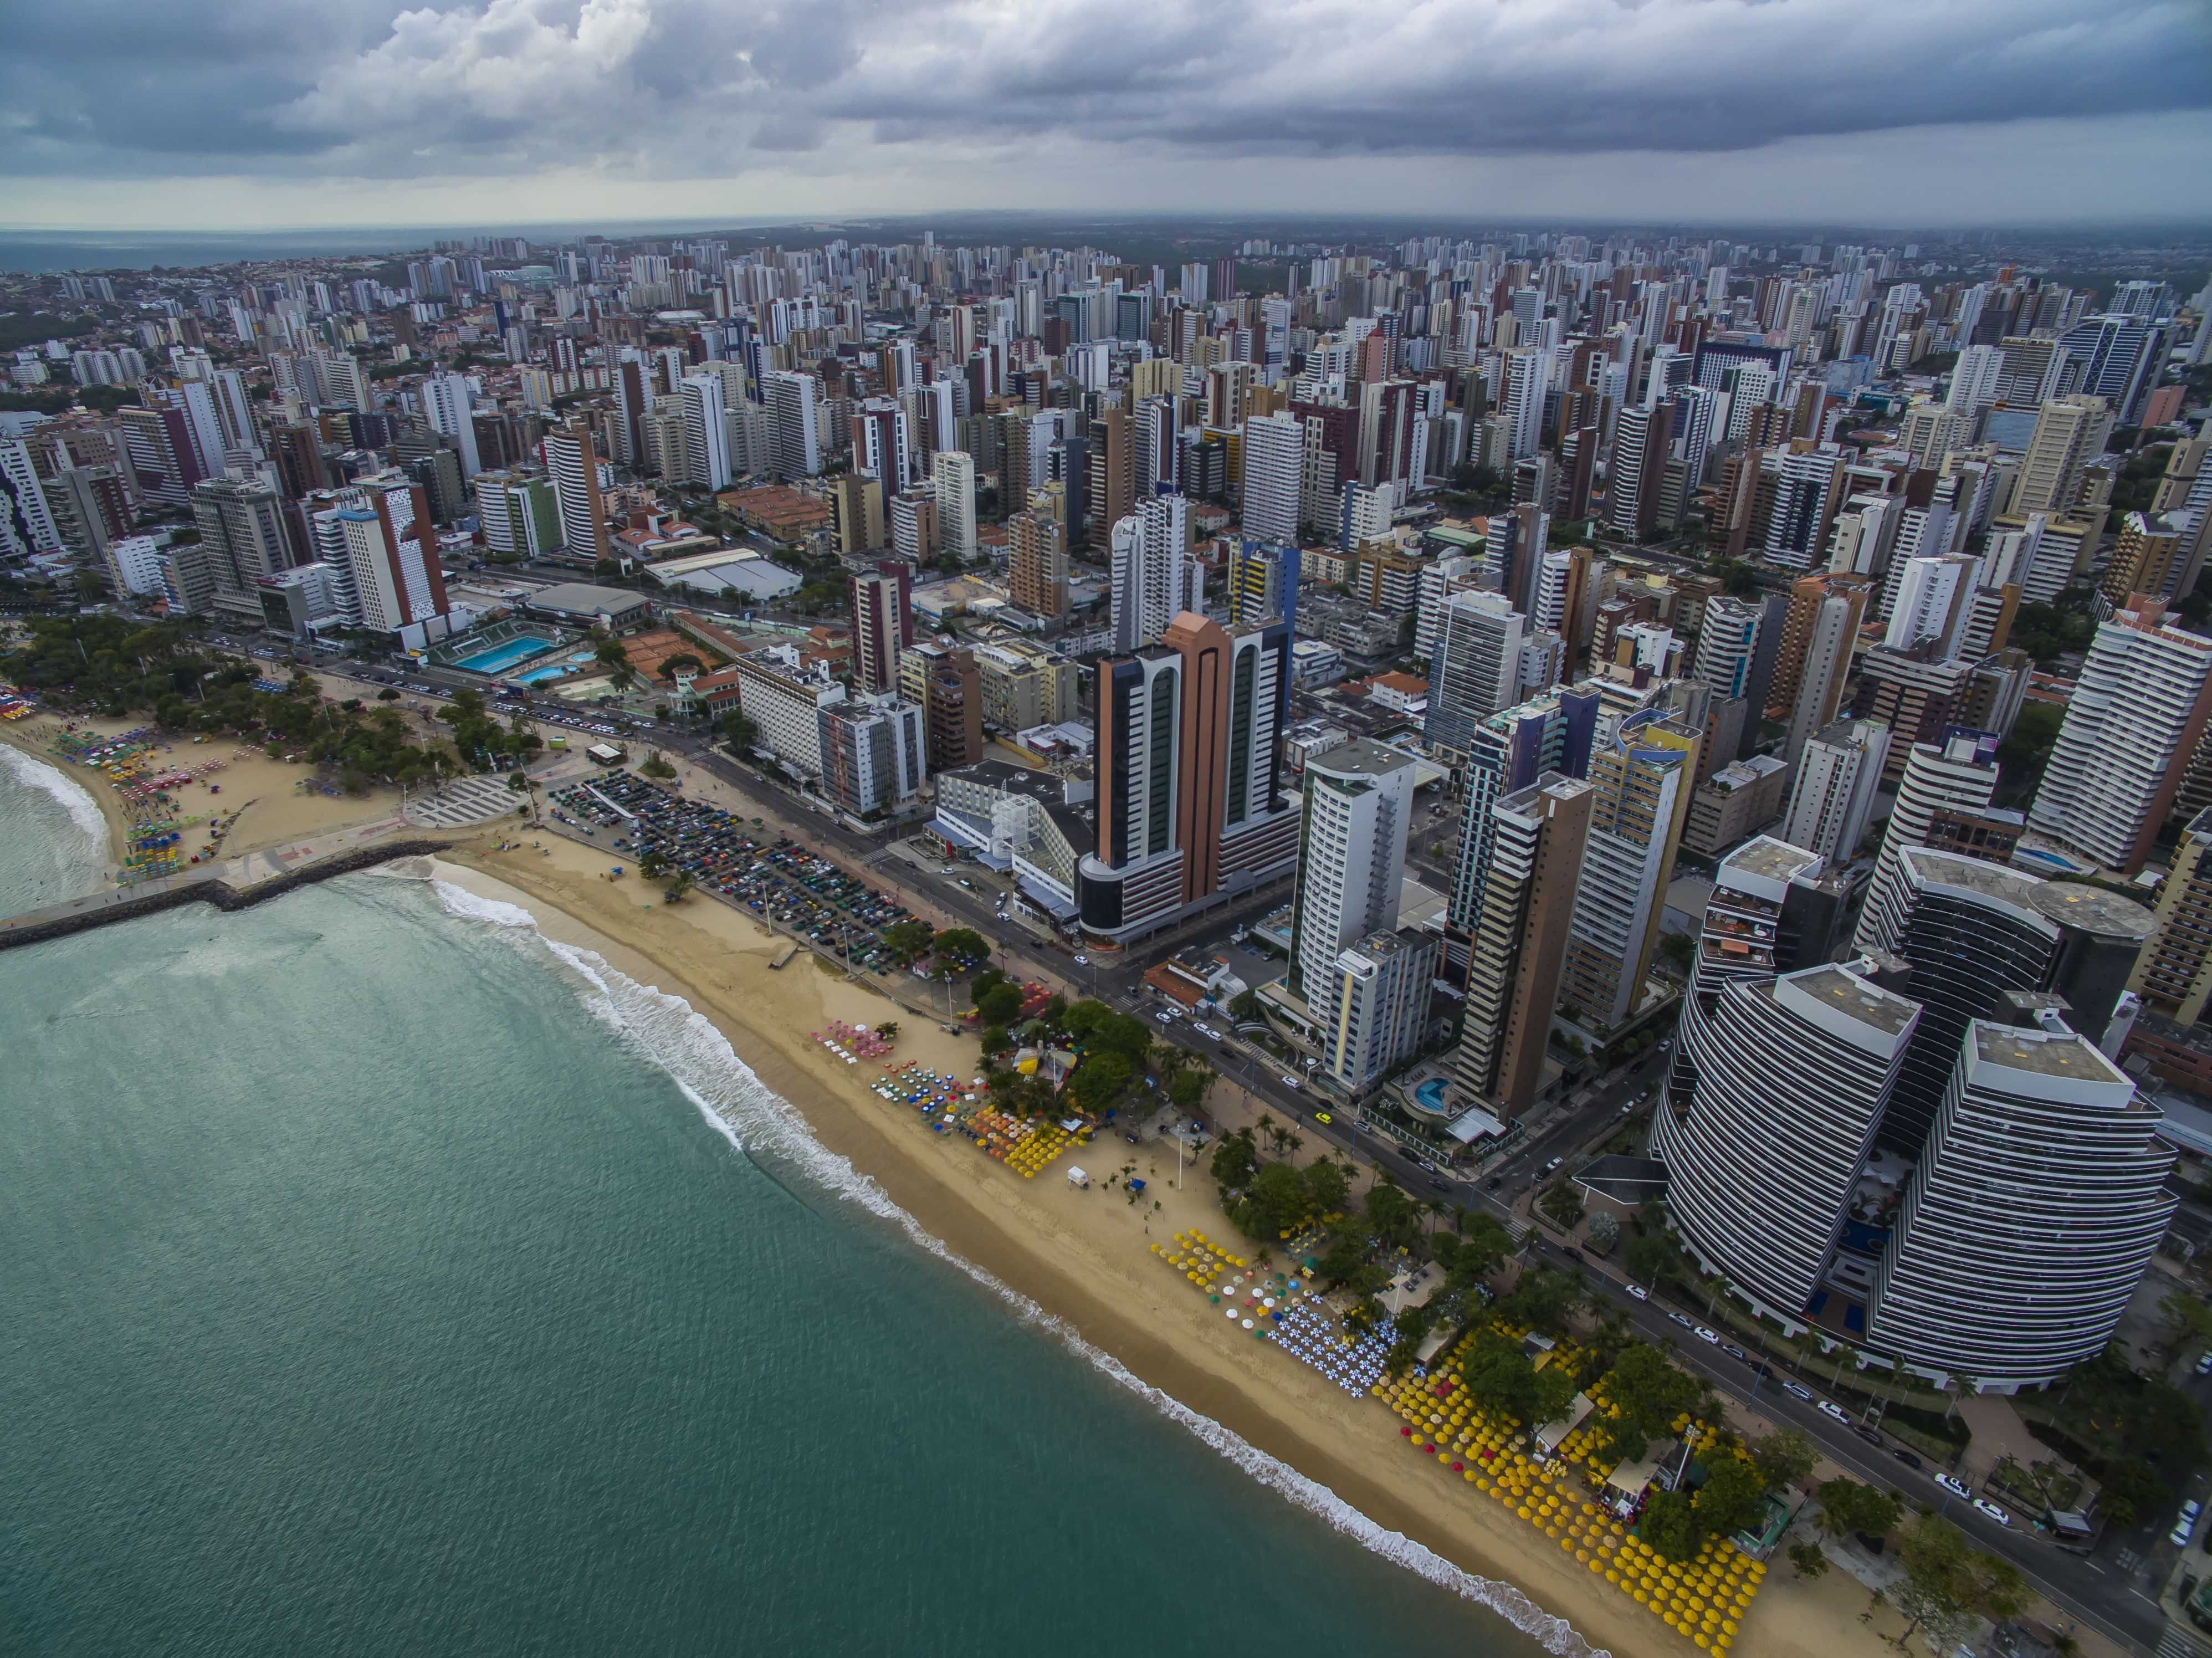  10 melhores escolas estaduais de Fortaleza segundo pais, alunos e professores 